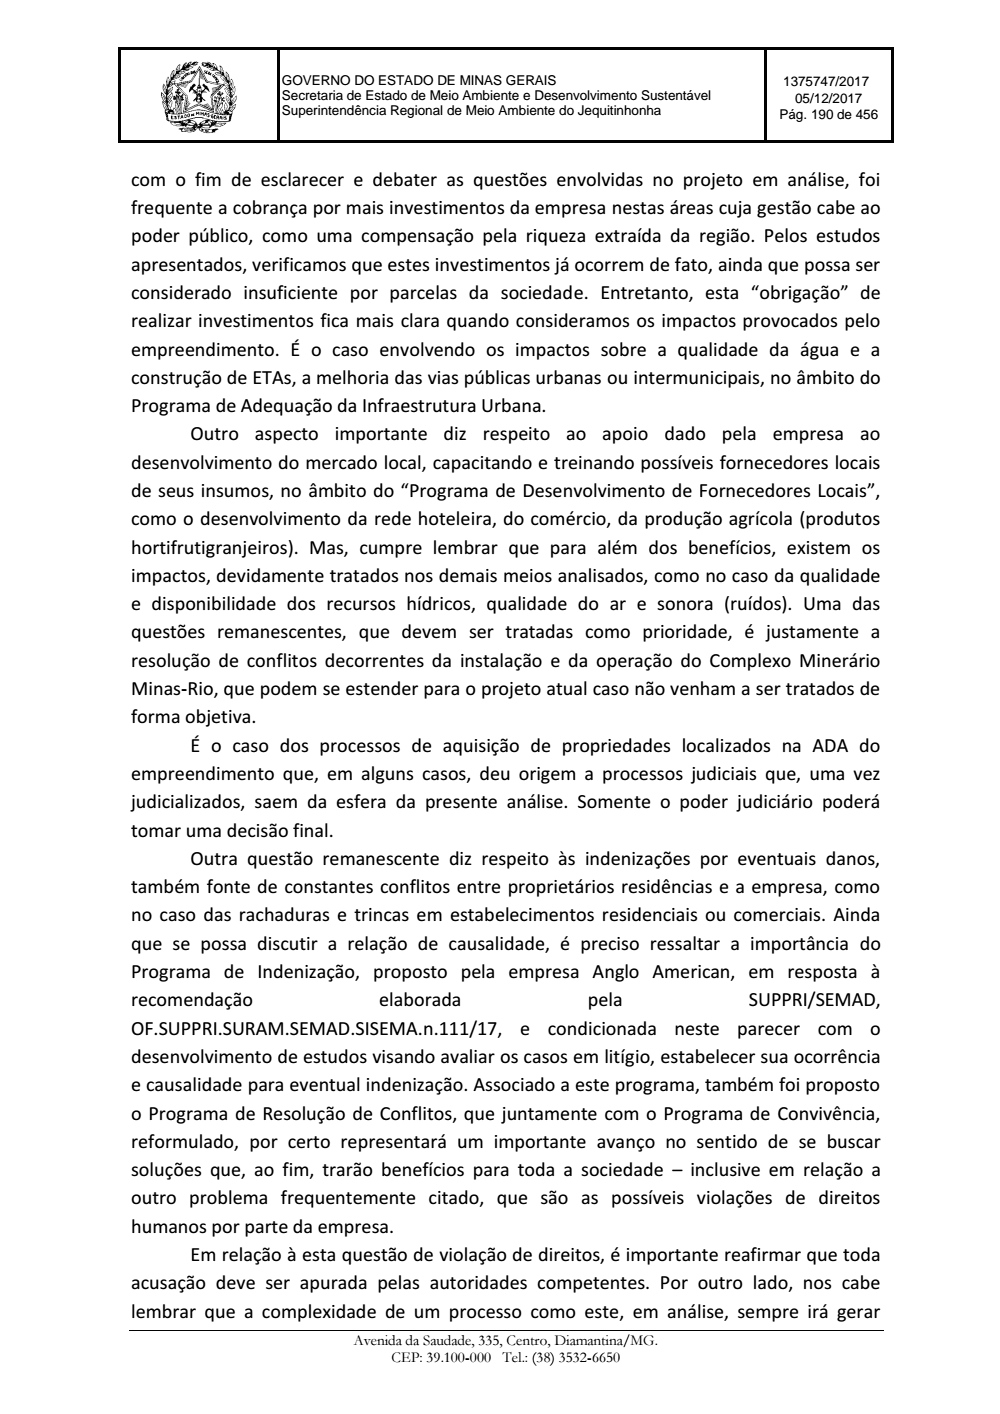 Page 190 from Parecer único da Secretaria de estado de Meio Ambiente e Desenvolvimento Sustentável (SEMAD)